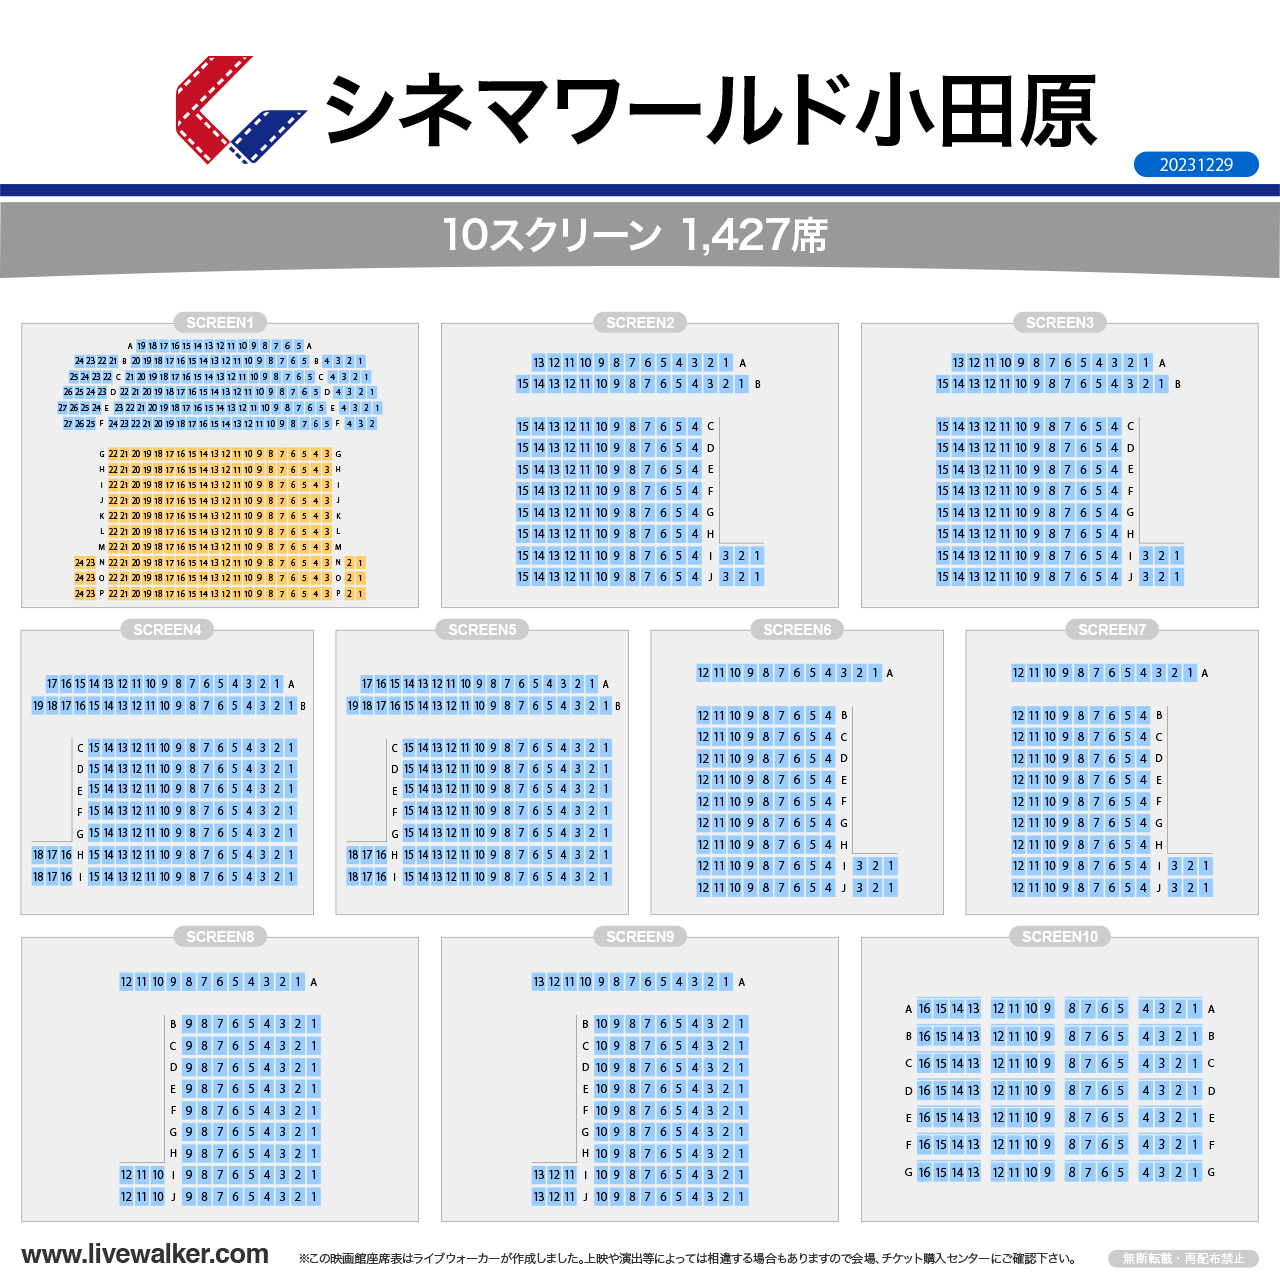 小田原コロナシネマワールドスクリーンの座席表